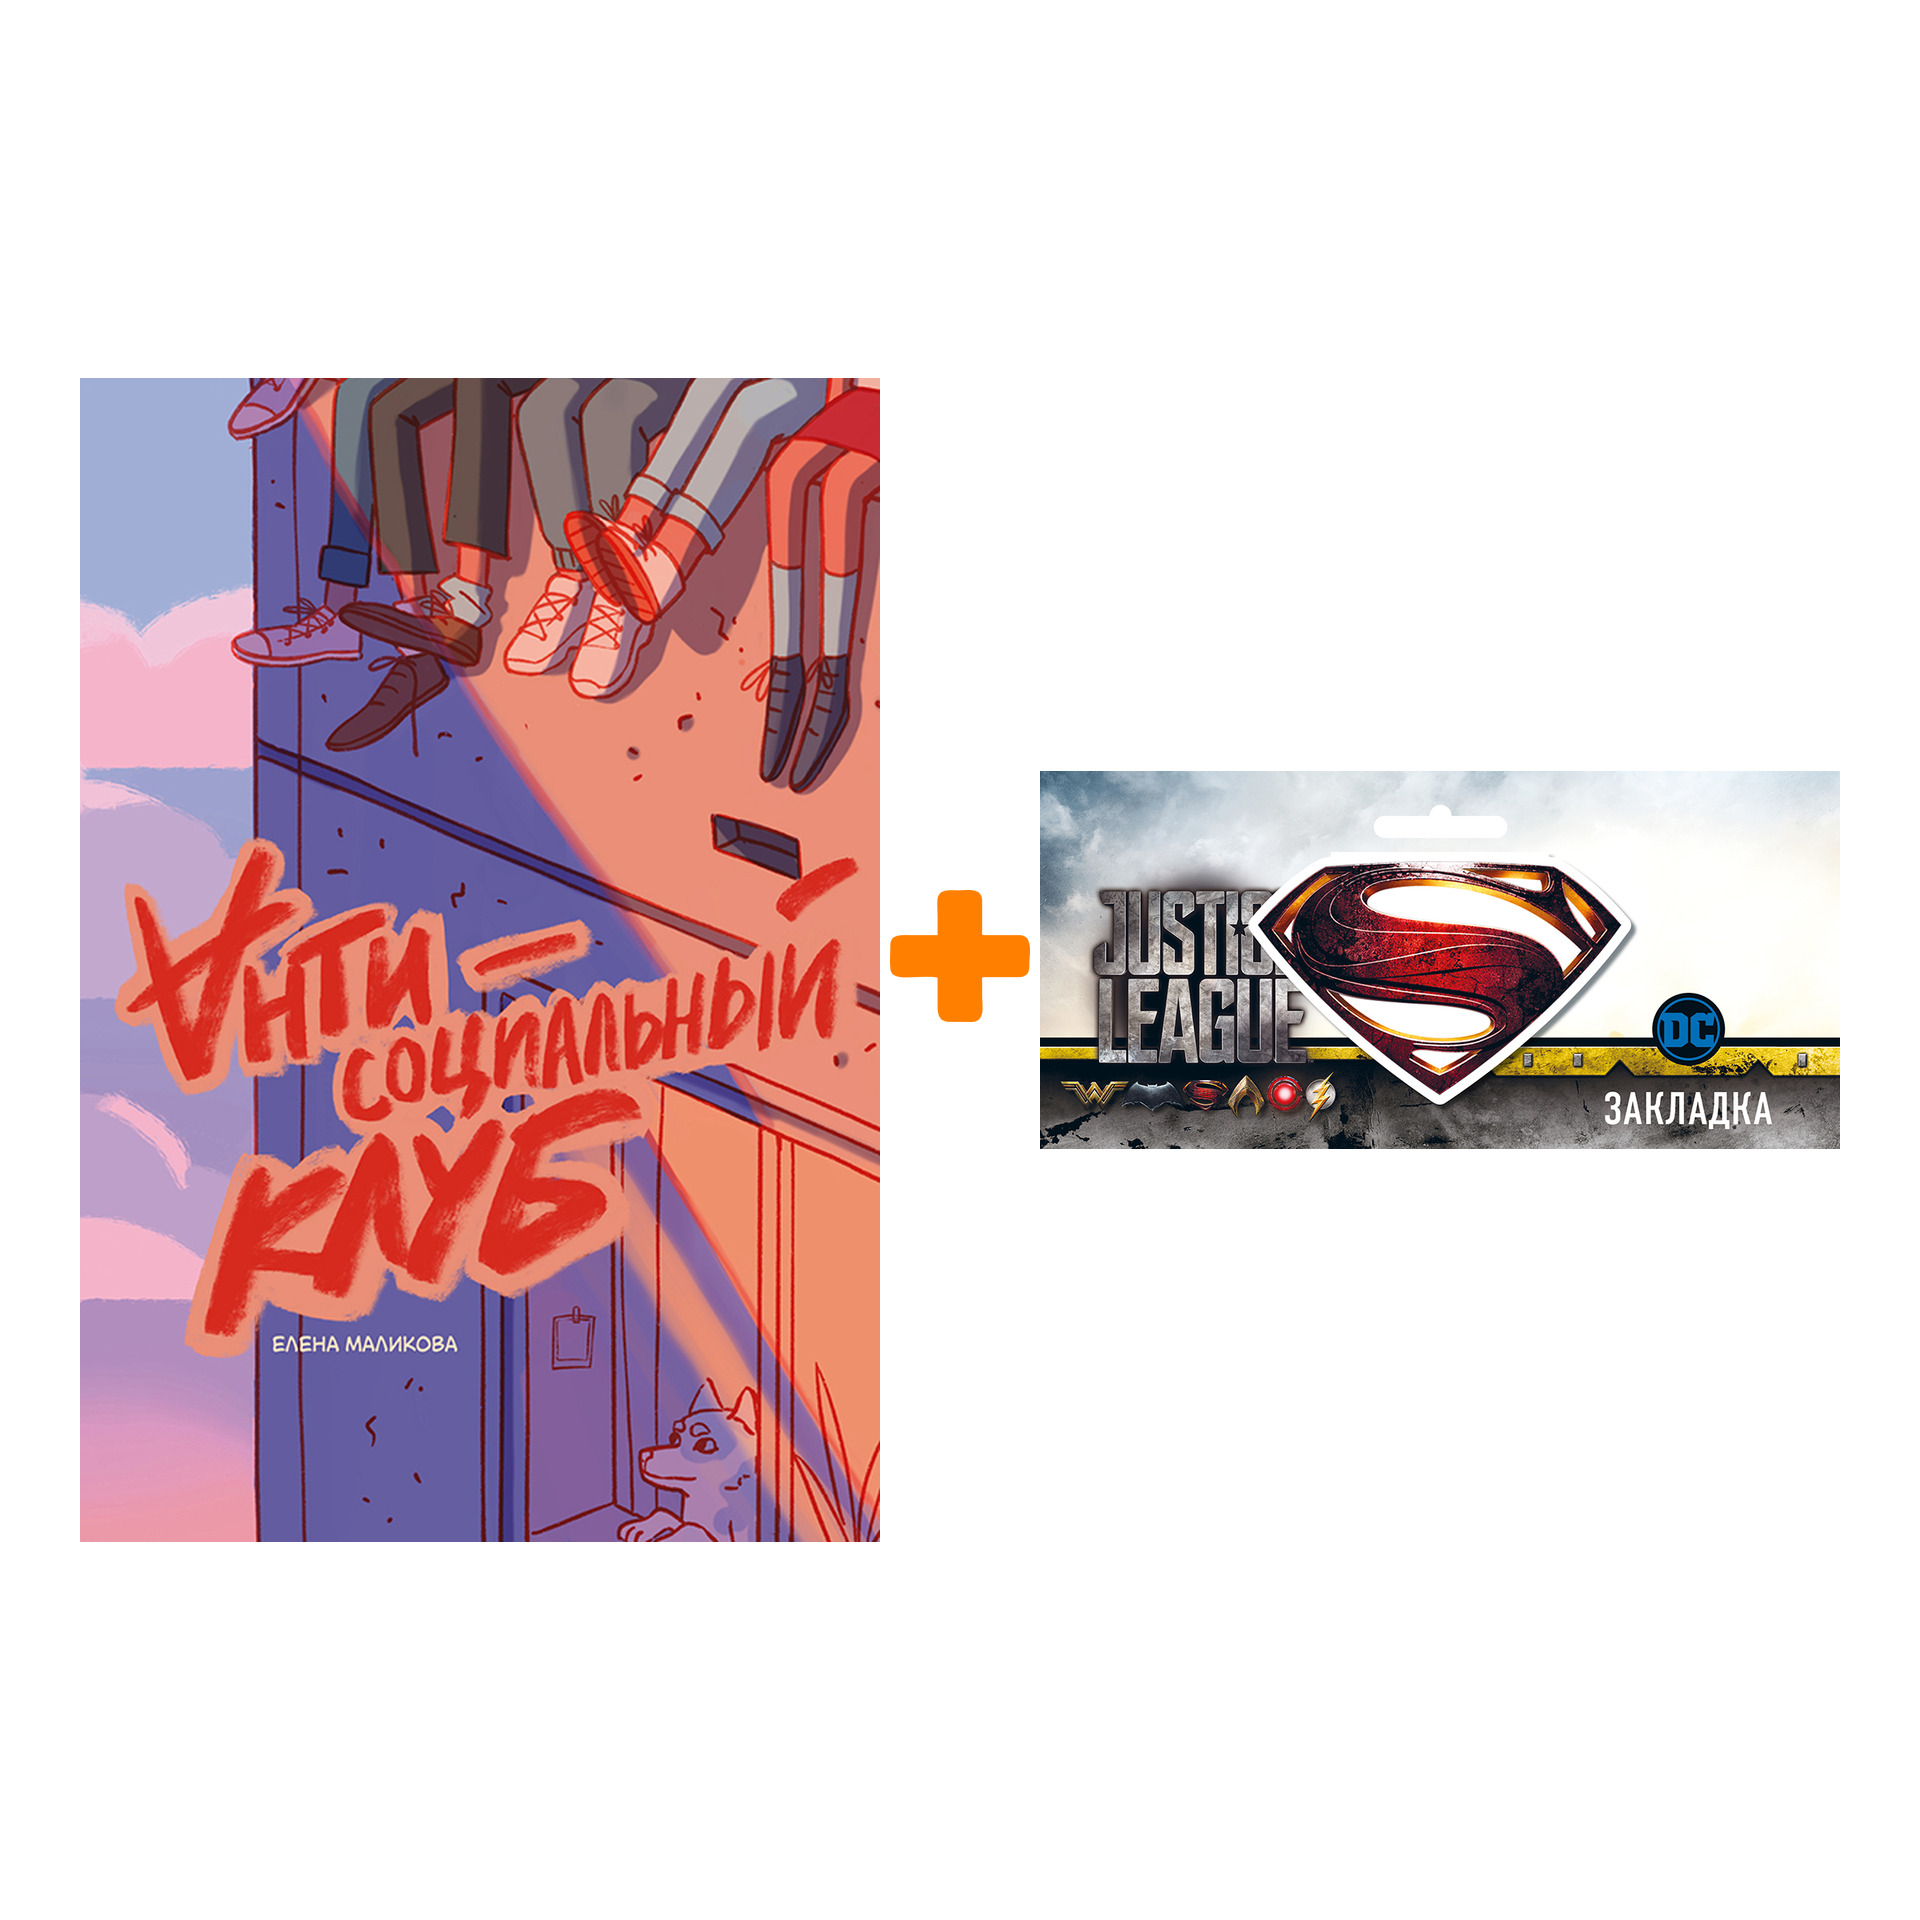 Набор Комикс Антисоциальный клуб + Закладка DC Justice League Superman магнитная